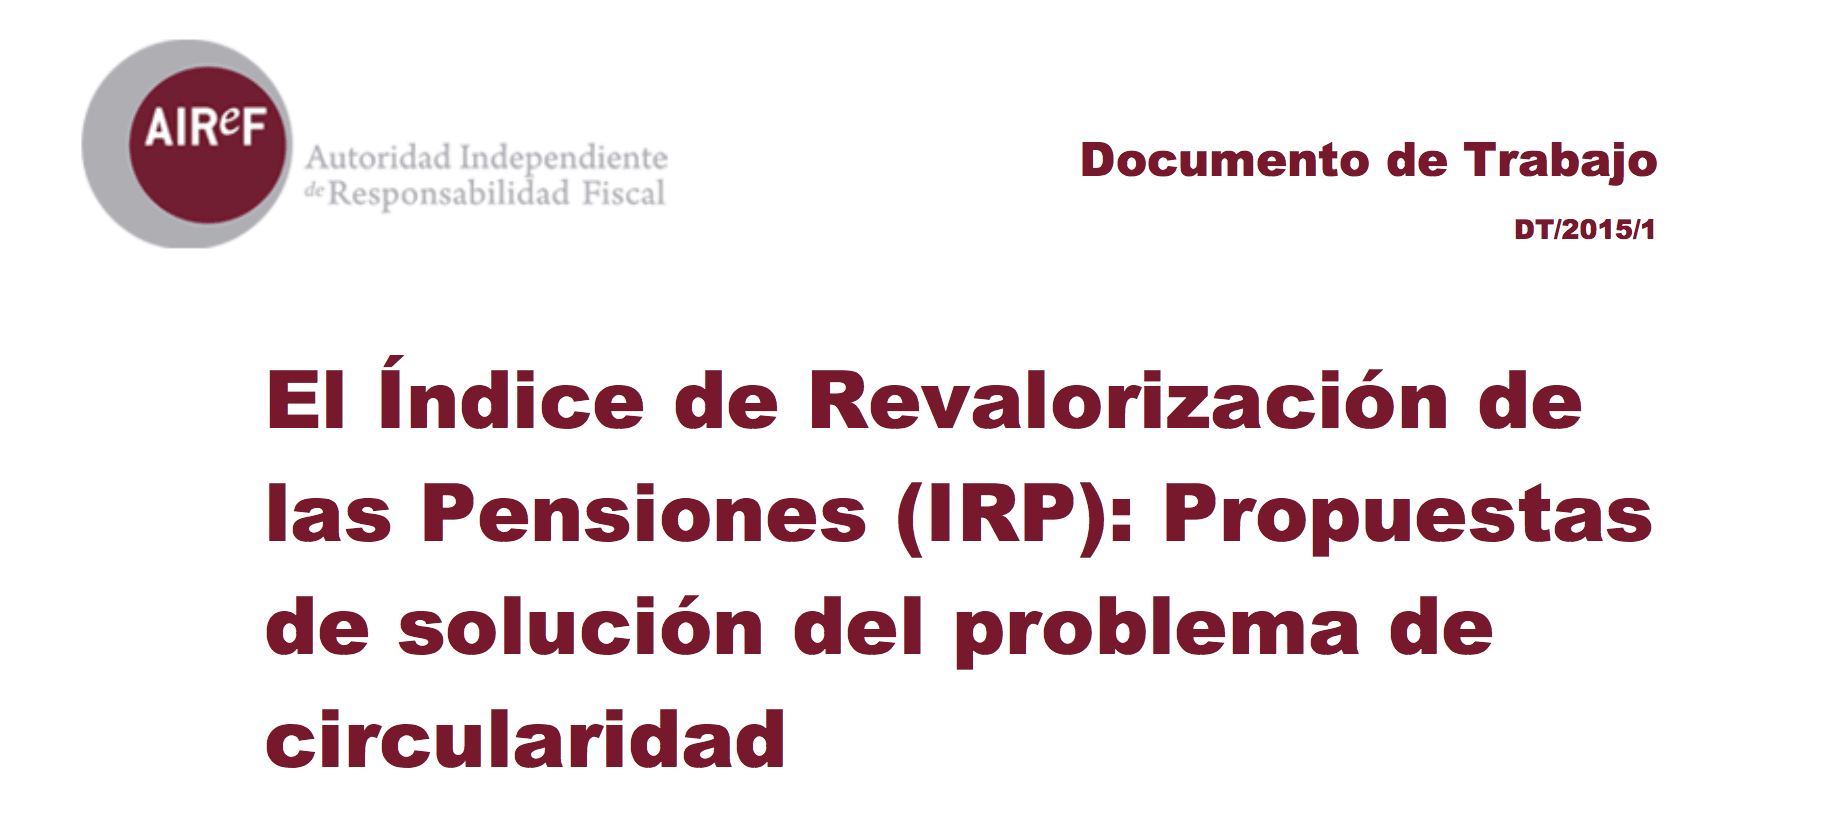 El índice de revalorización de las pensiones (IRP)